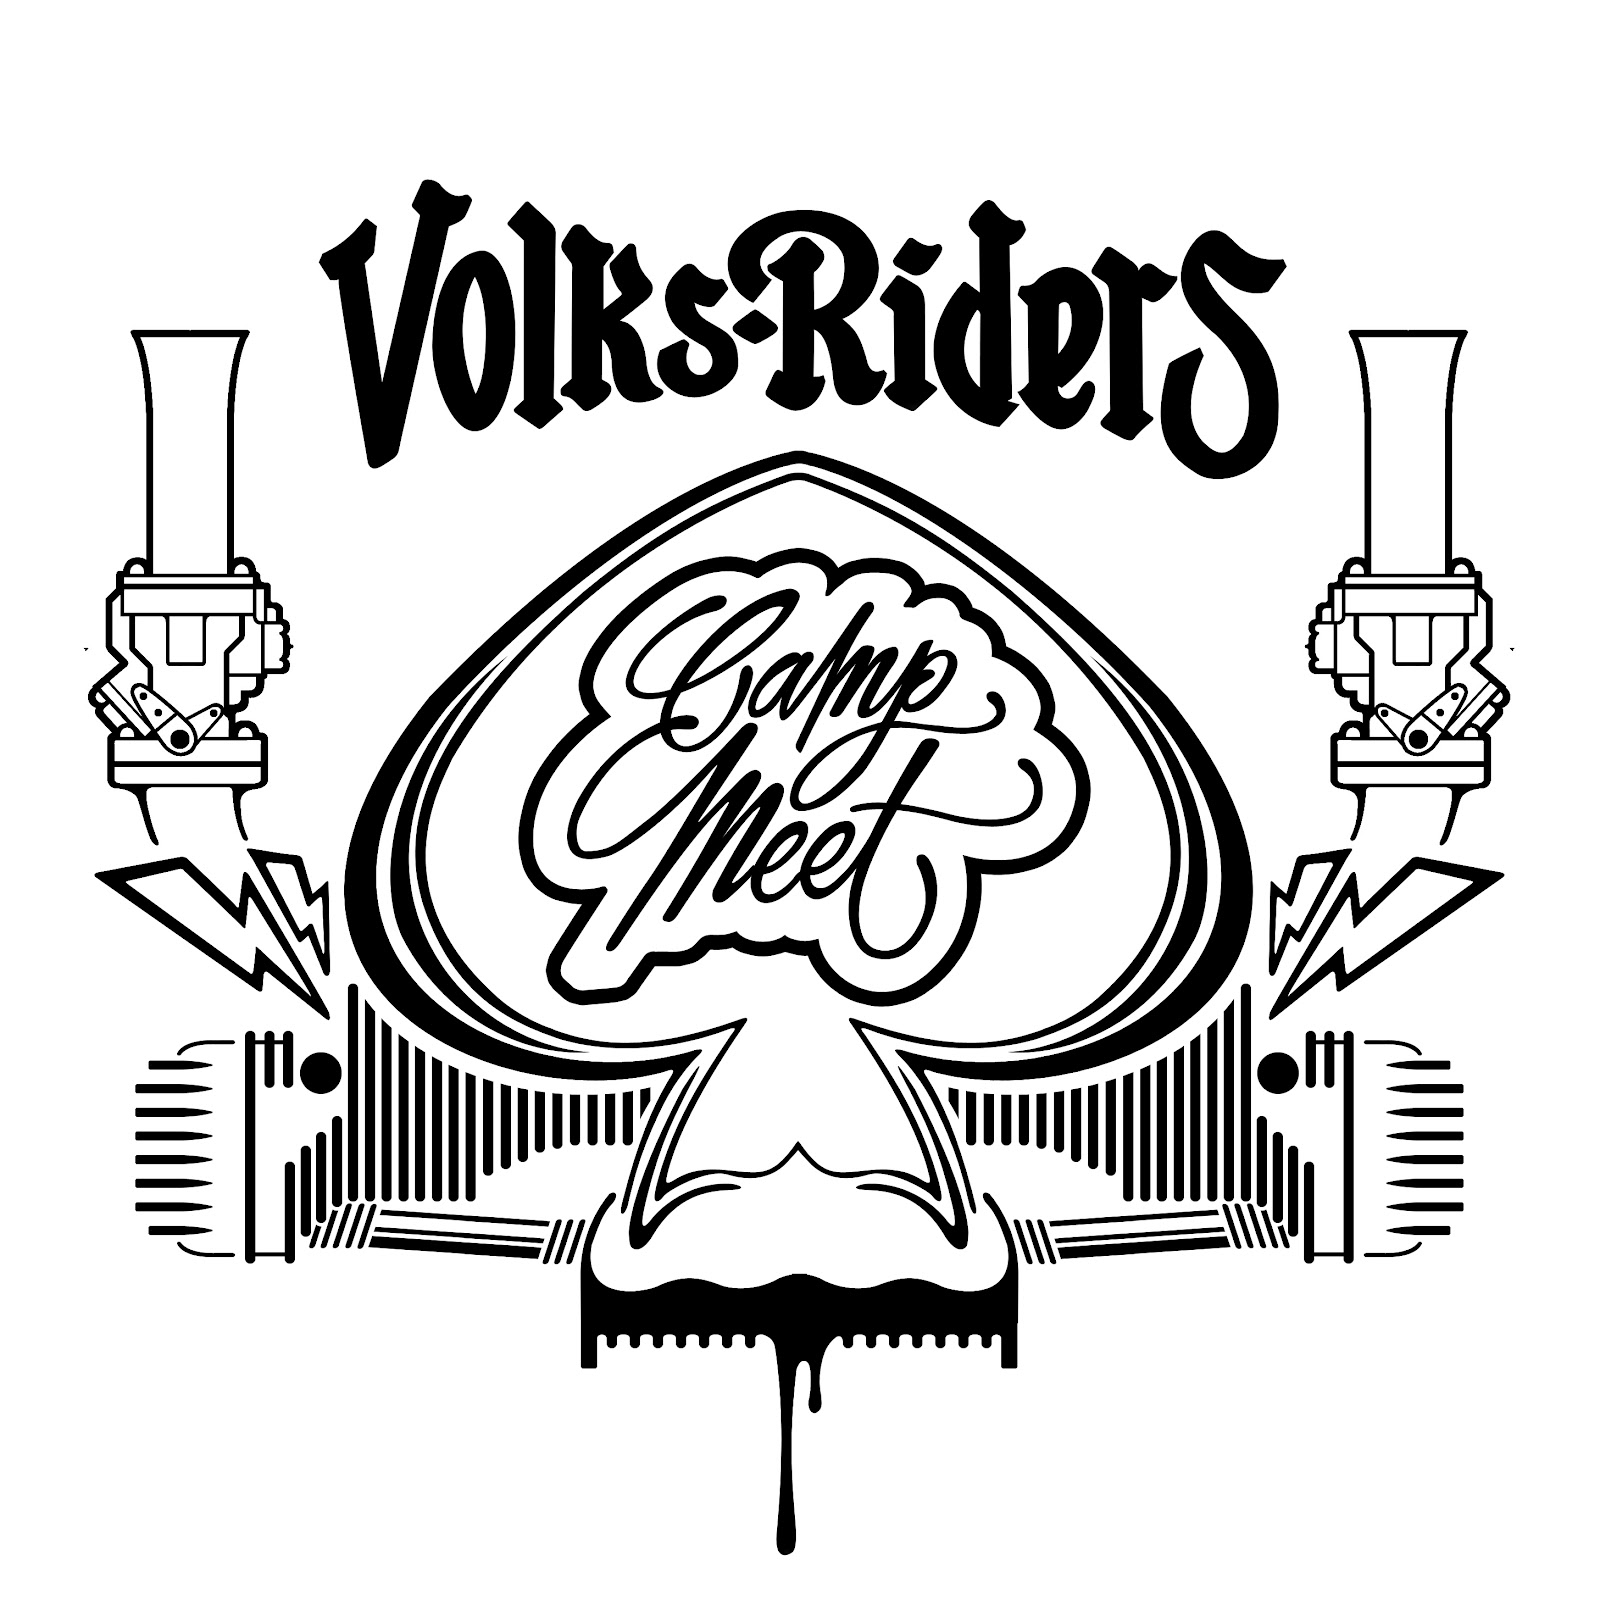 Ayuda con logo VOLKSRIDERS+LOGO+2012